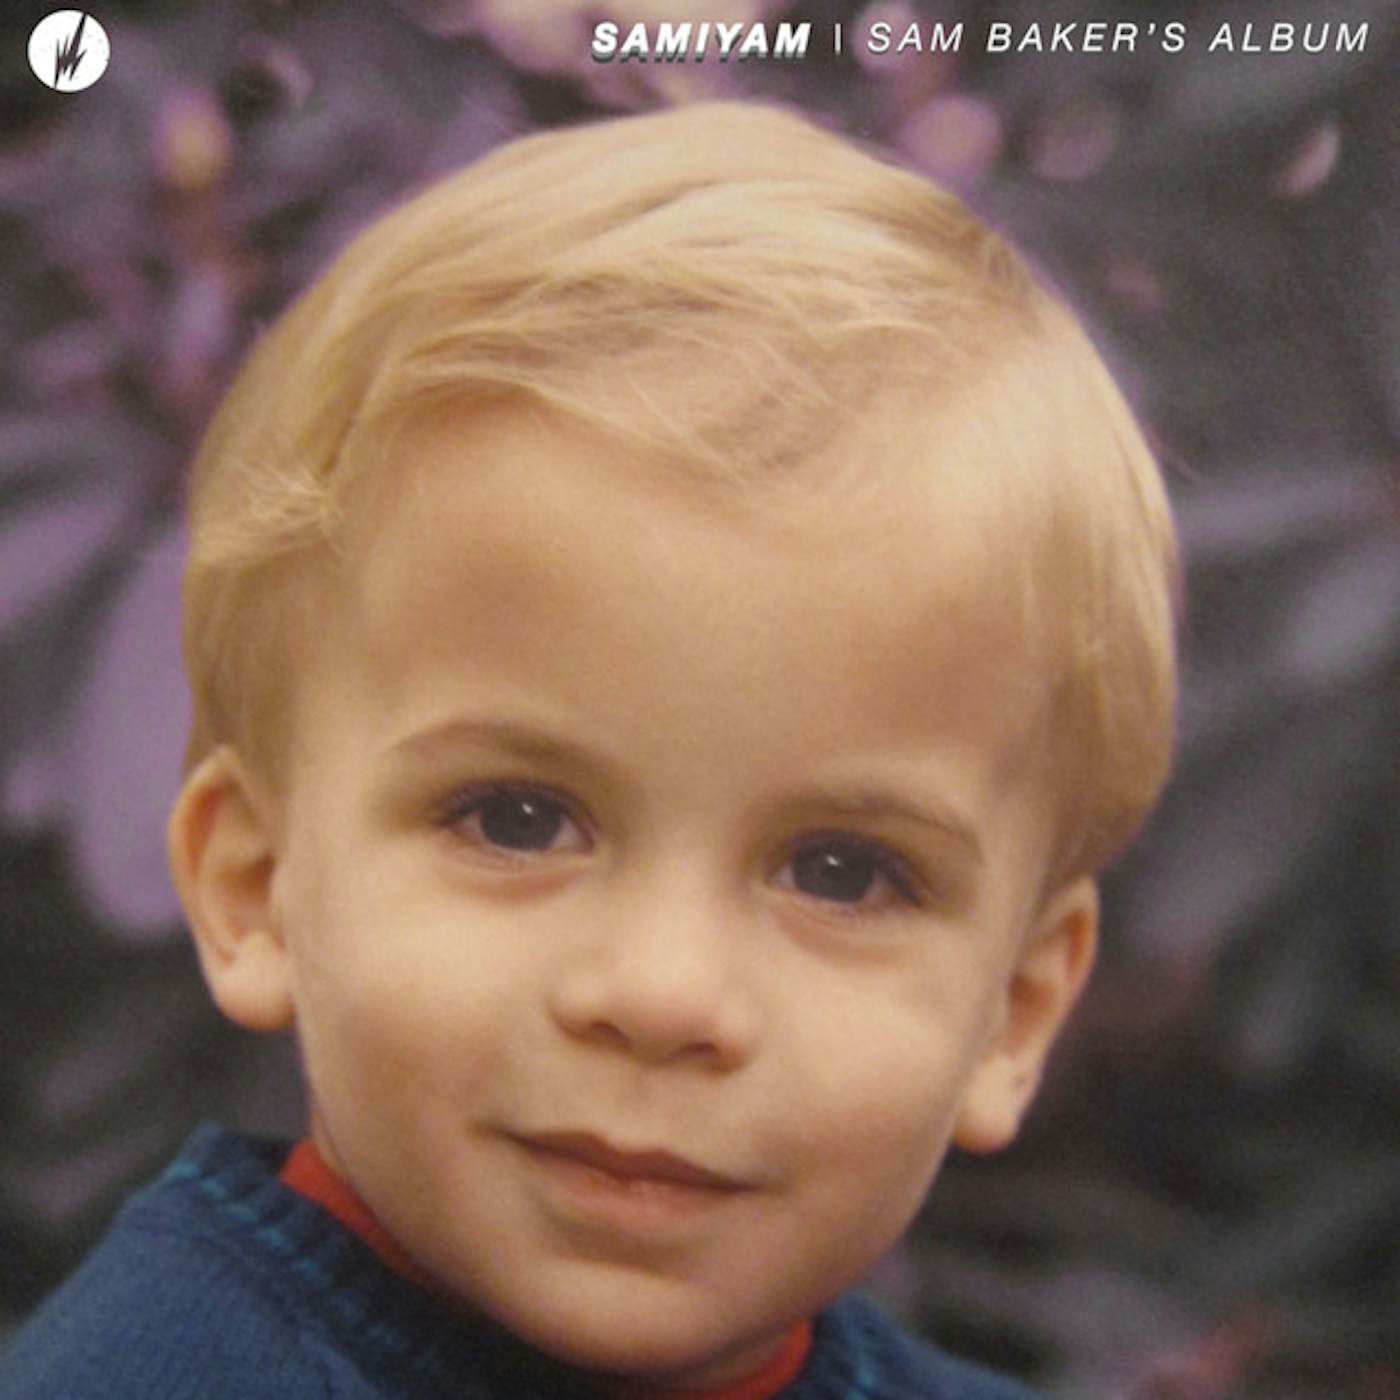 Samiyam Sam Baker's Album Vinyl Record